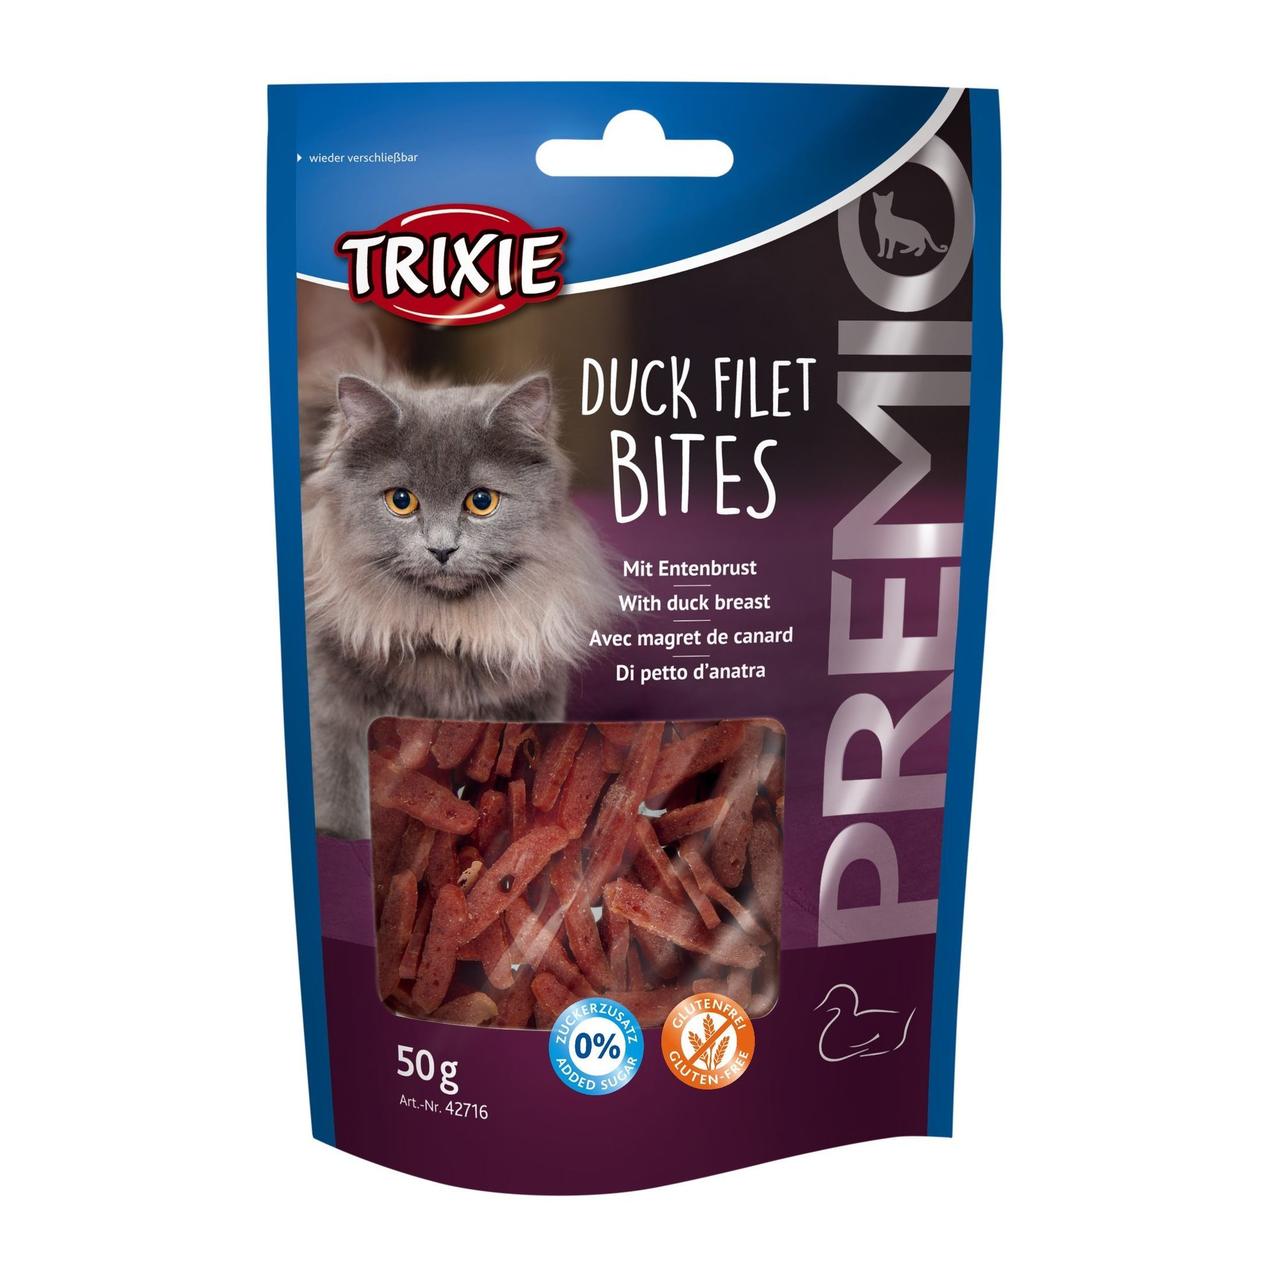 Ласощі Trixie для котів Тріксі Преміо "Duck Filet Bites" філе качки сушене 50г арт.42716